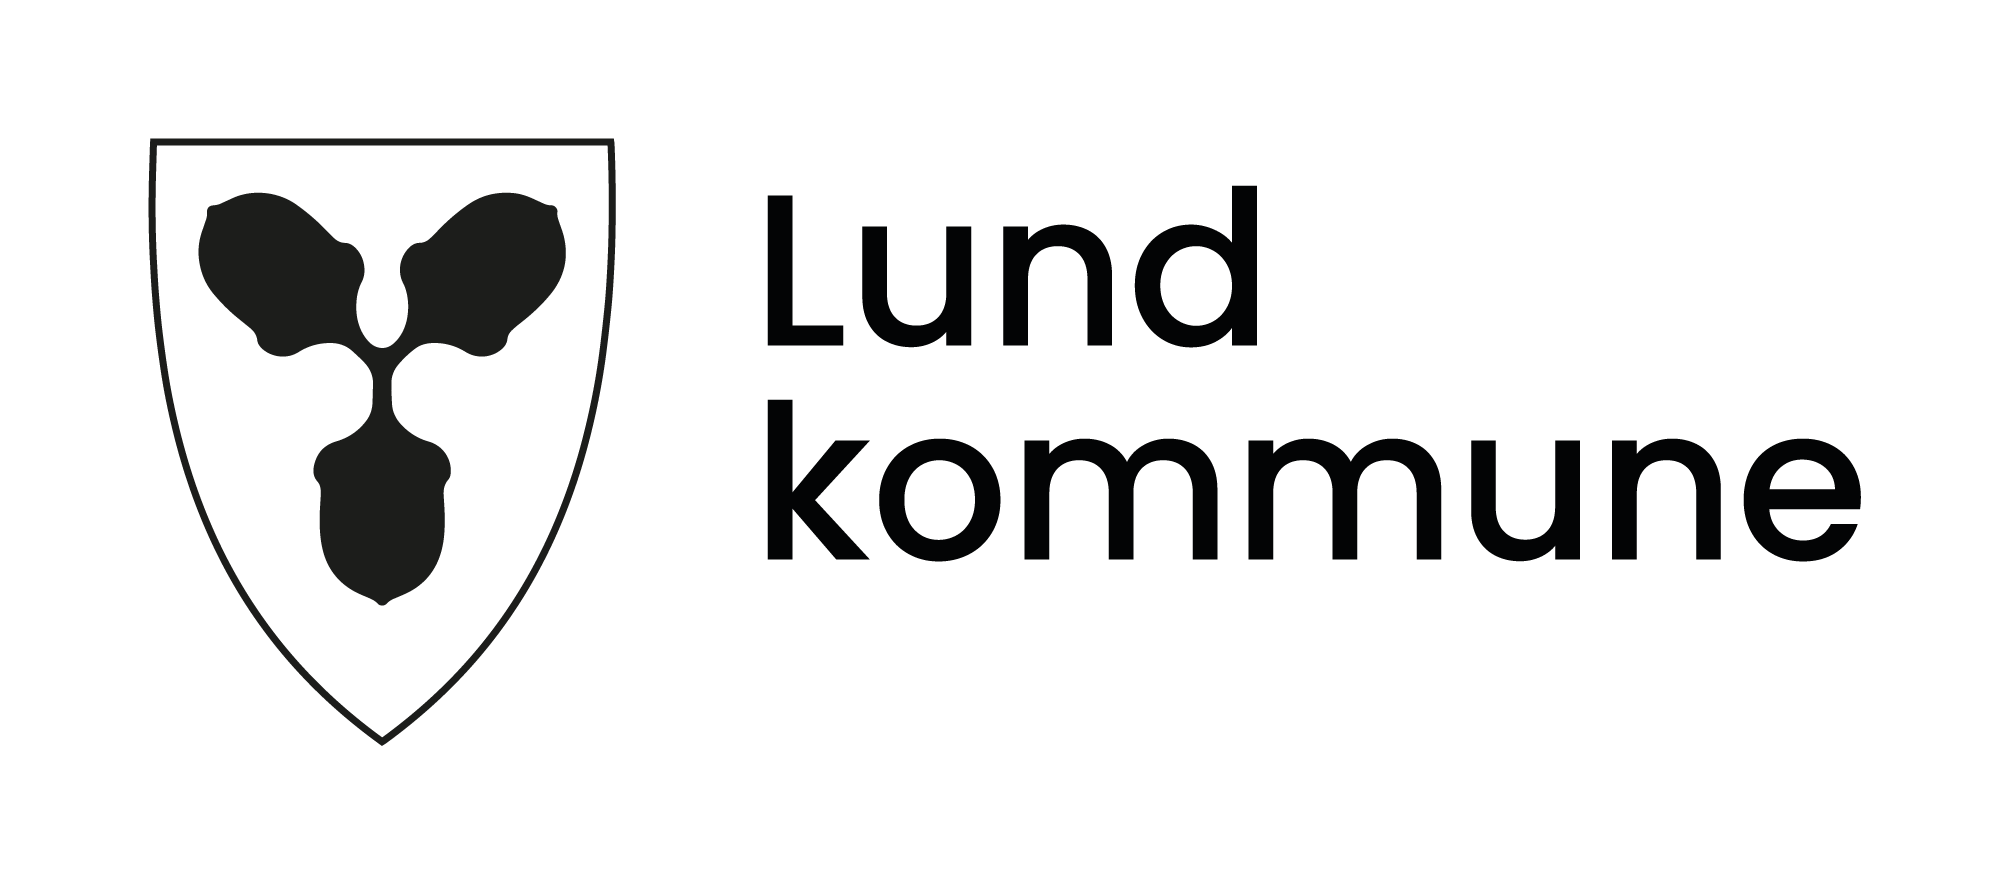 LUND KOMMUNE logo